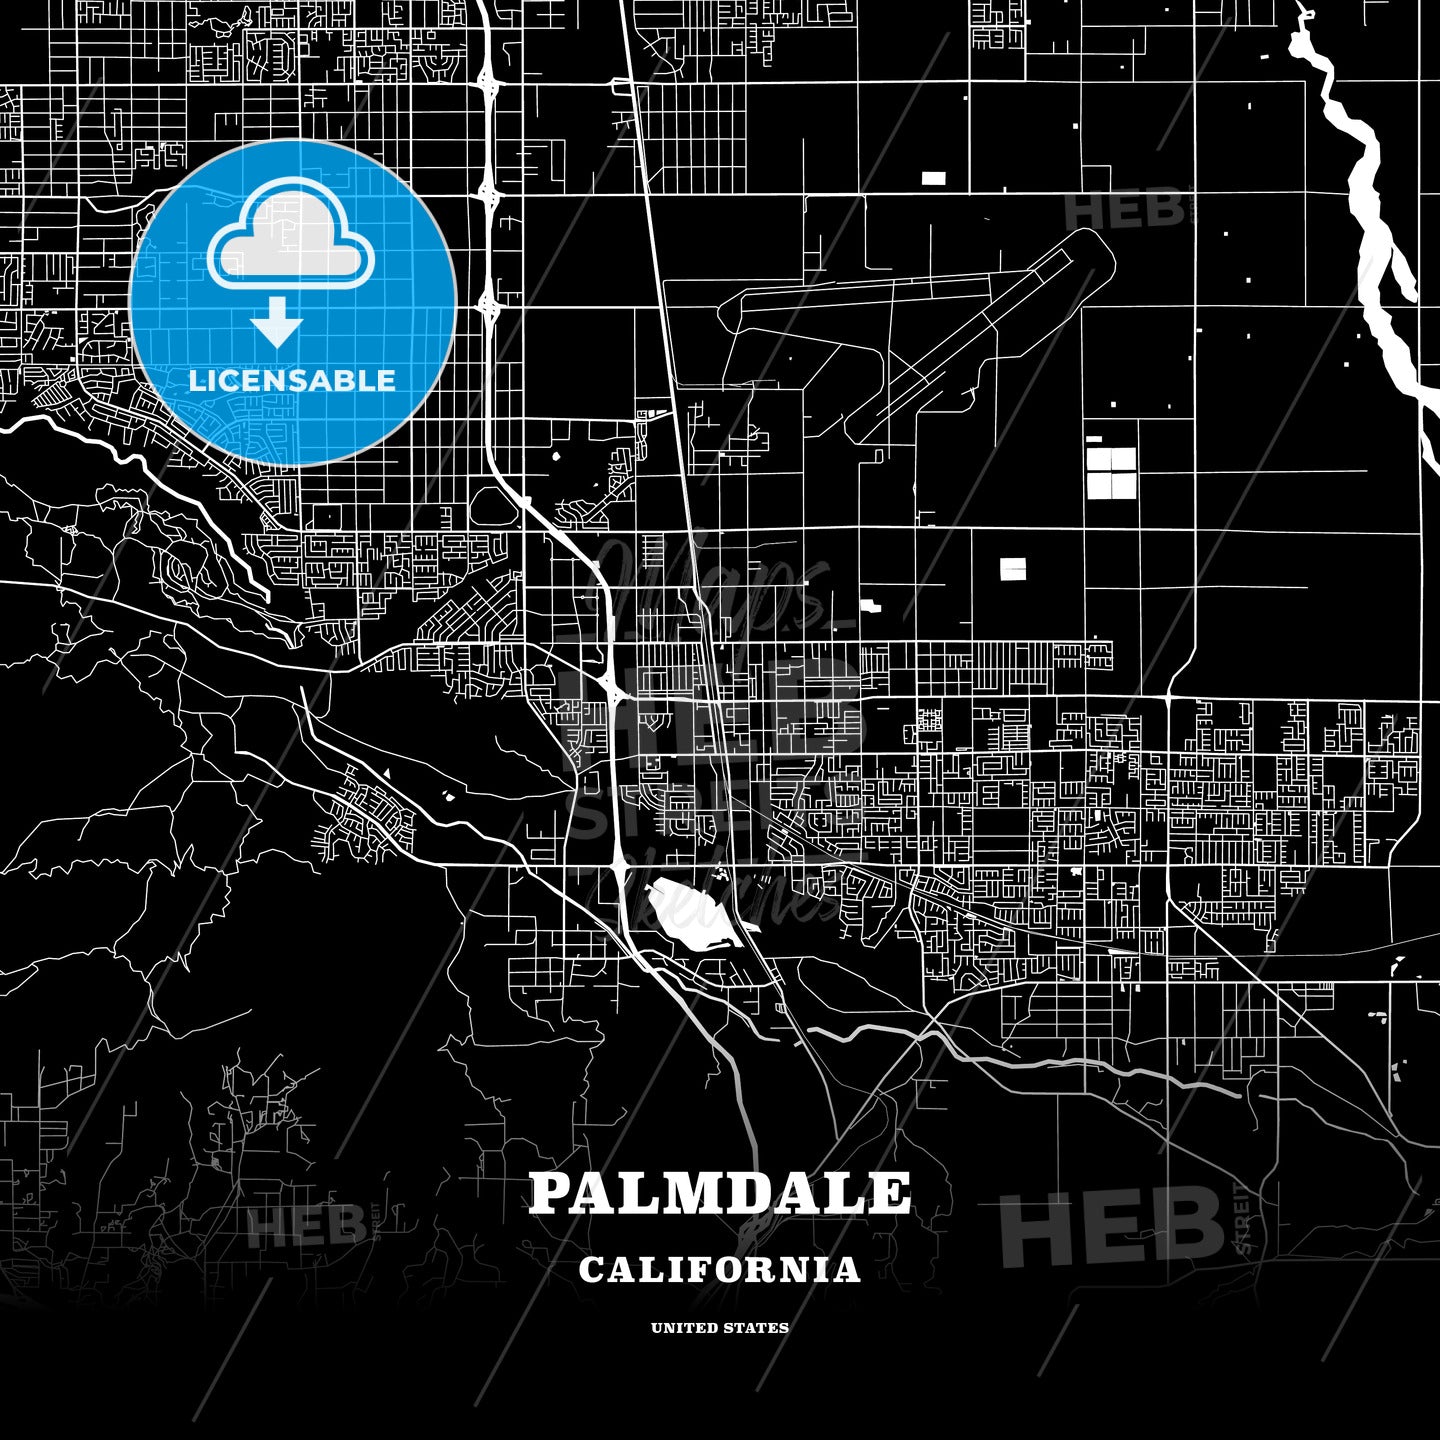 Palmdale, California, USA map